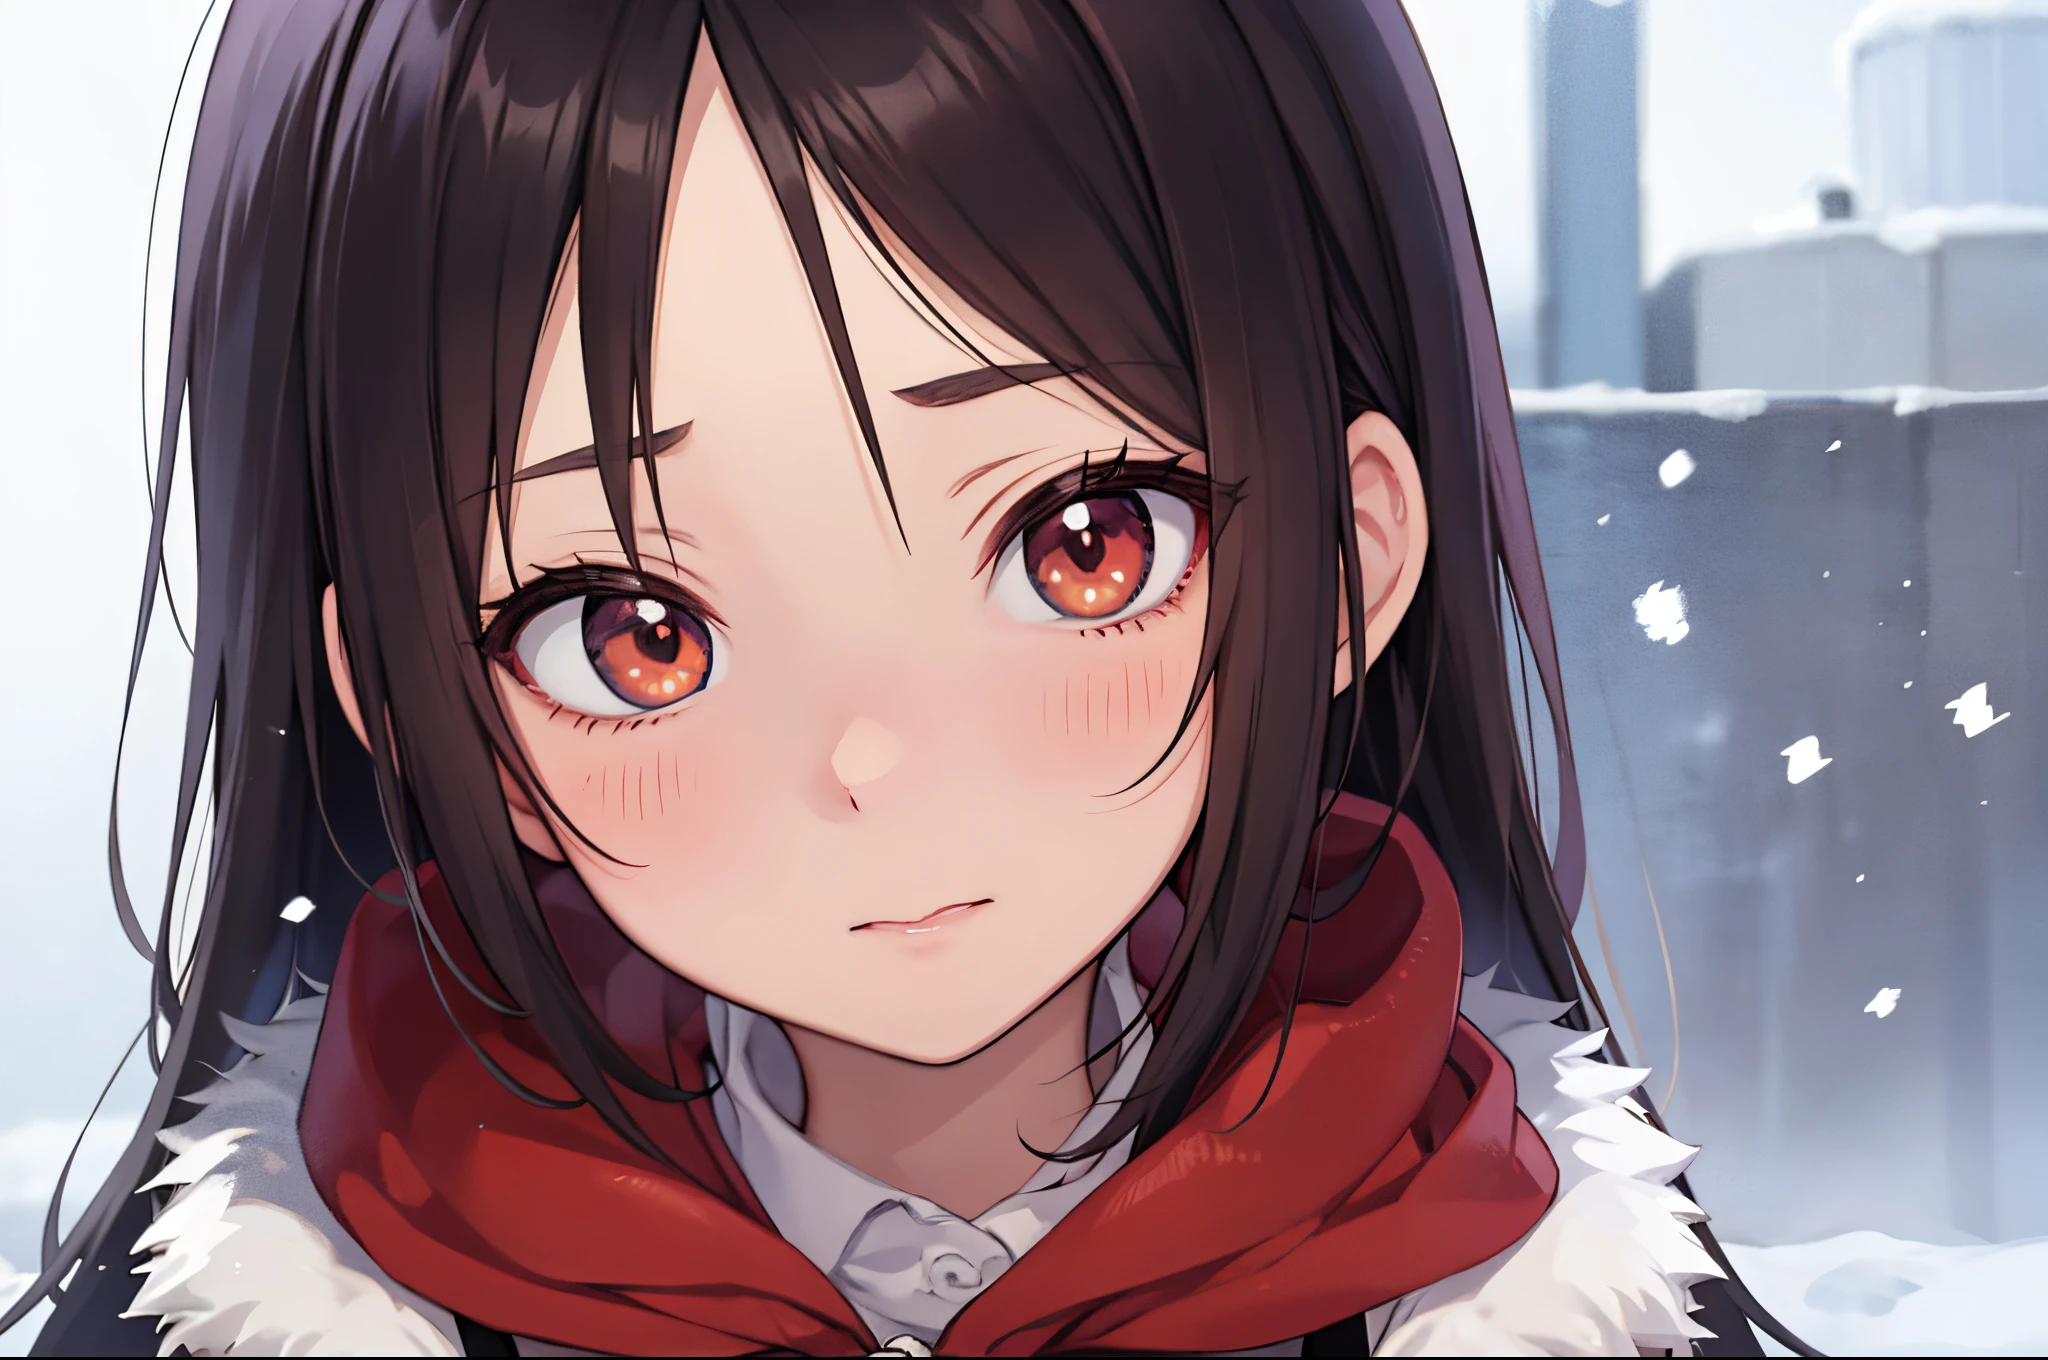 Anime-Stil, 1 Mädchen, winter, warme Kleidung, rote Wangen, rote Nase, es schneit, Hintergrund: winter、Extreme Nahaufnahme, Porträt、Gesundes Gesicht